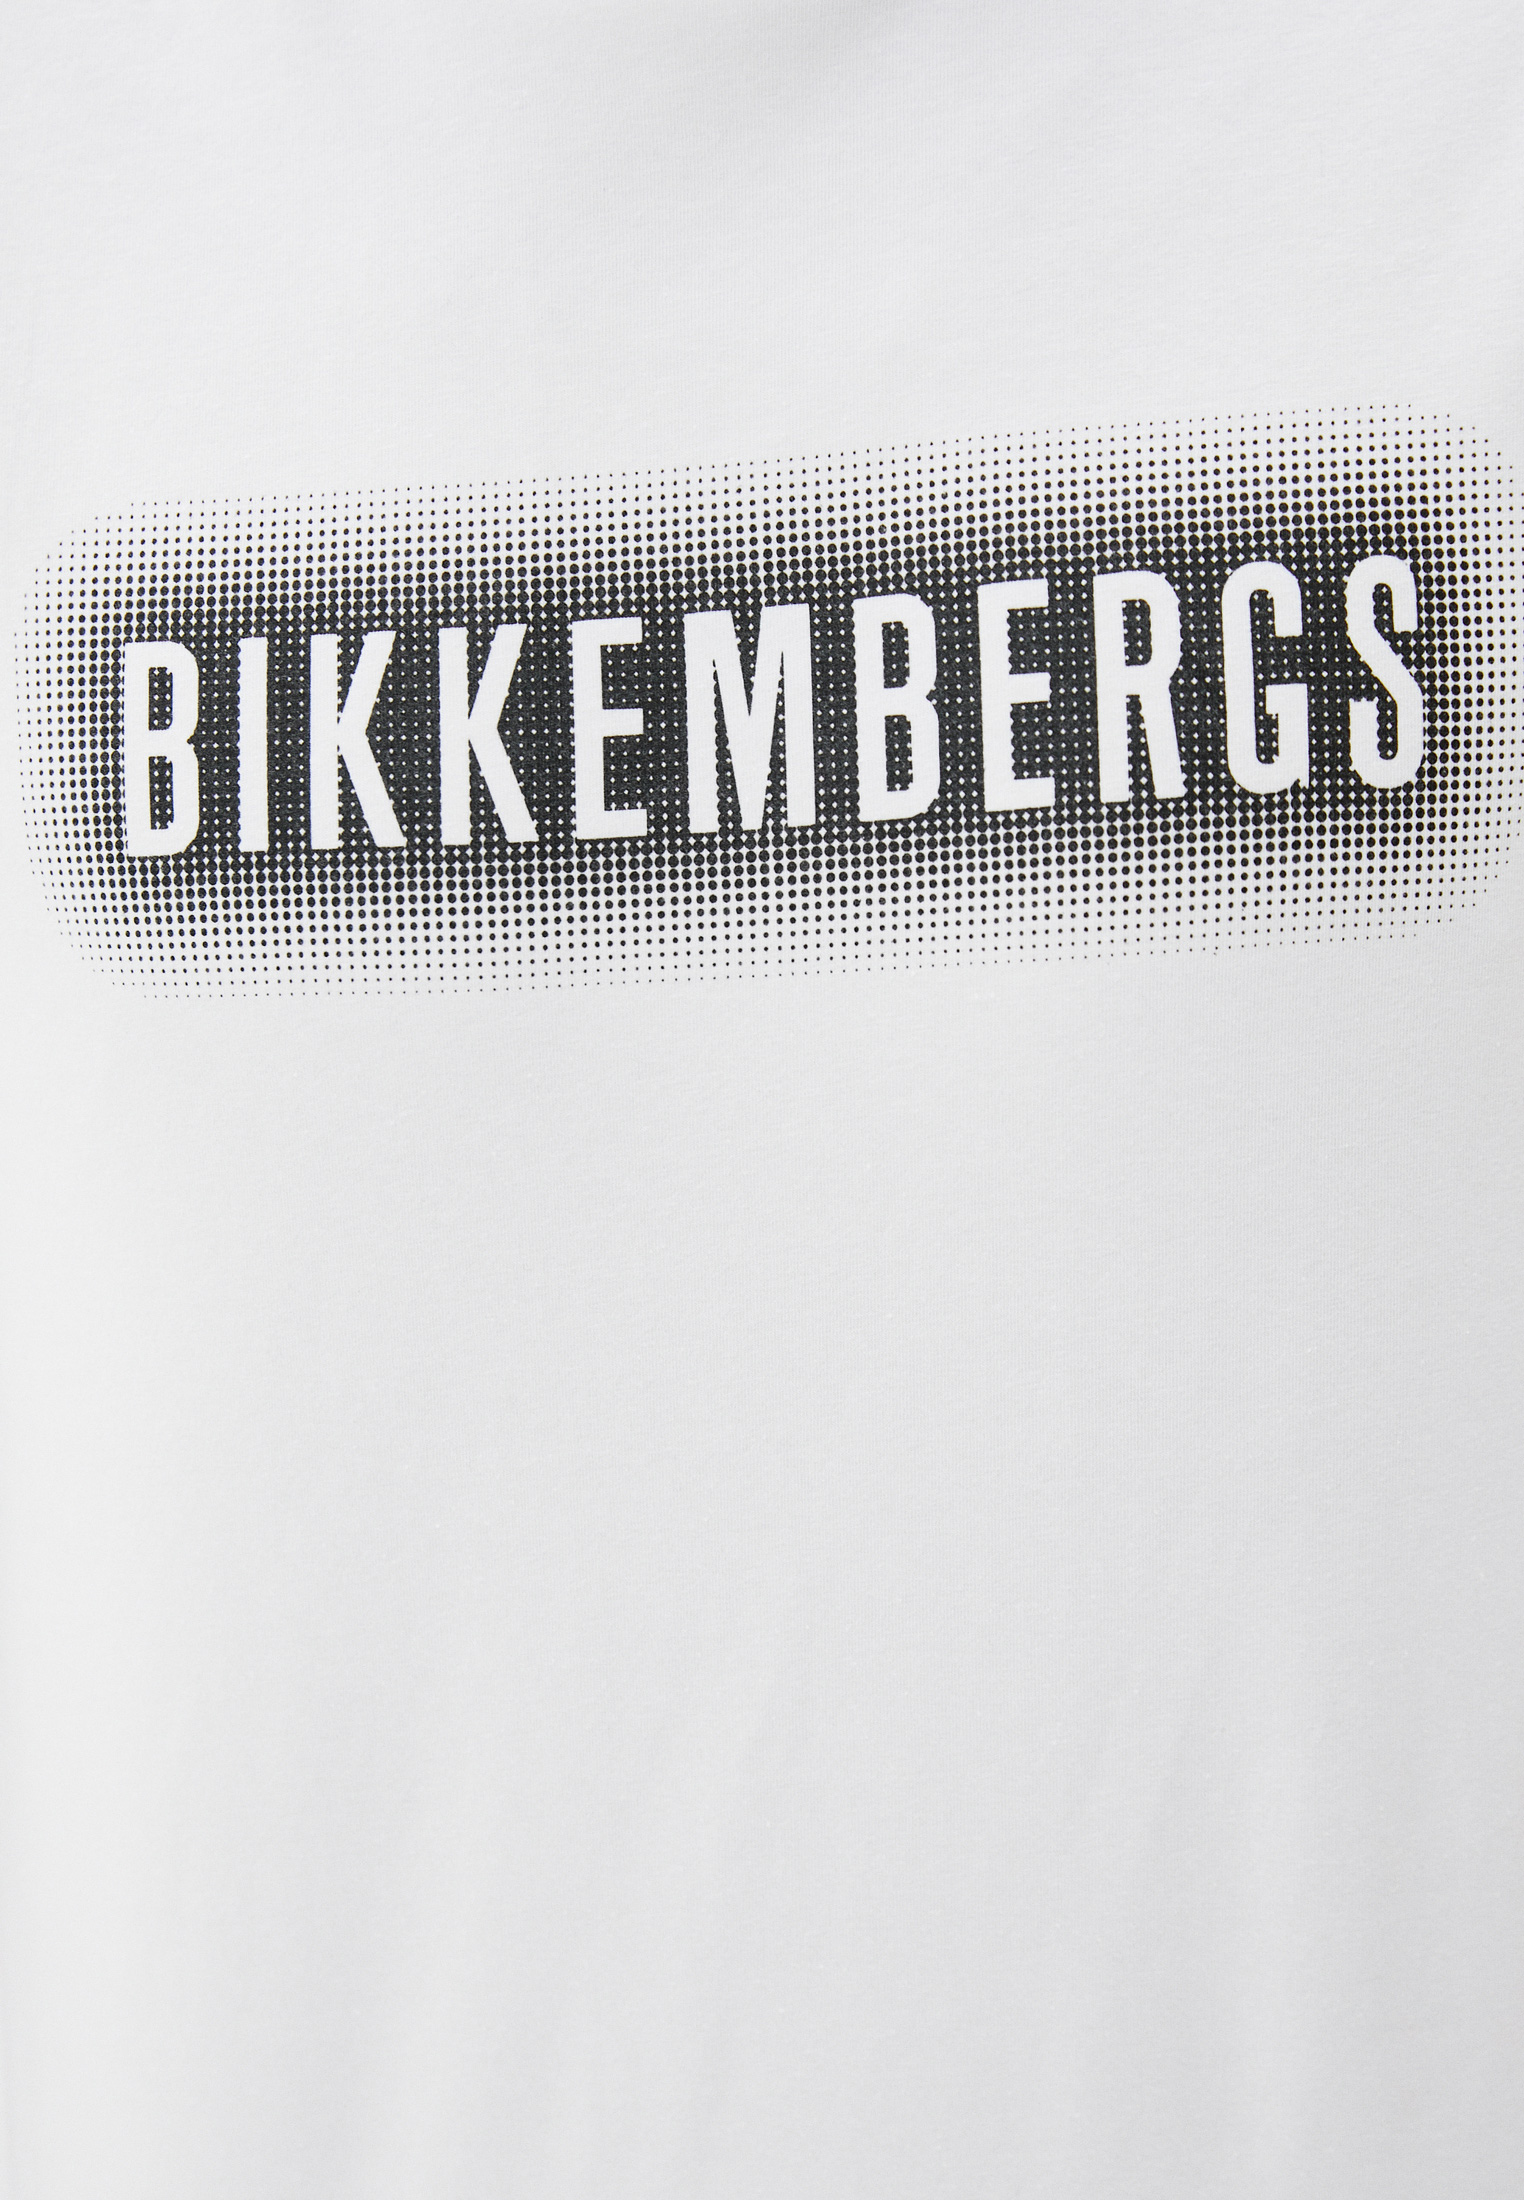 Мужская футболка Bikkembergs (Биккембергс) C 7 021 6U E 1814: изображение 5